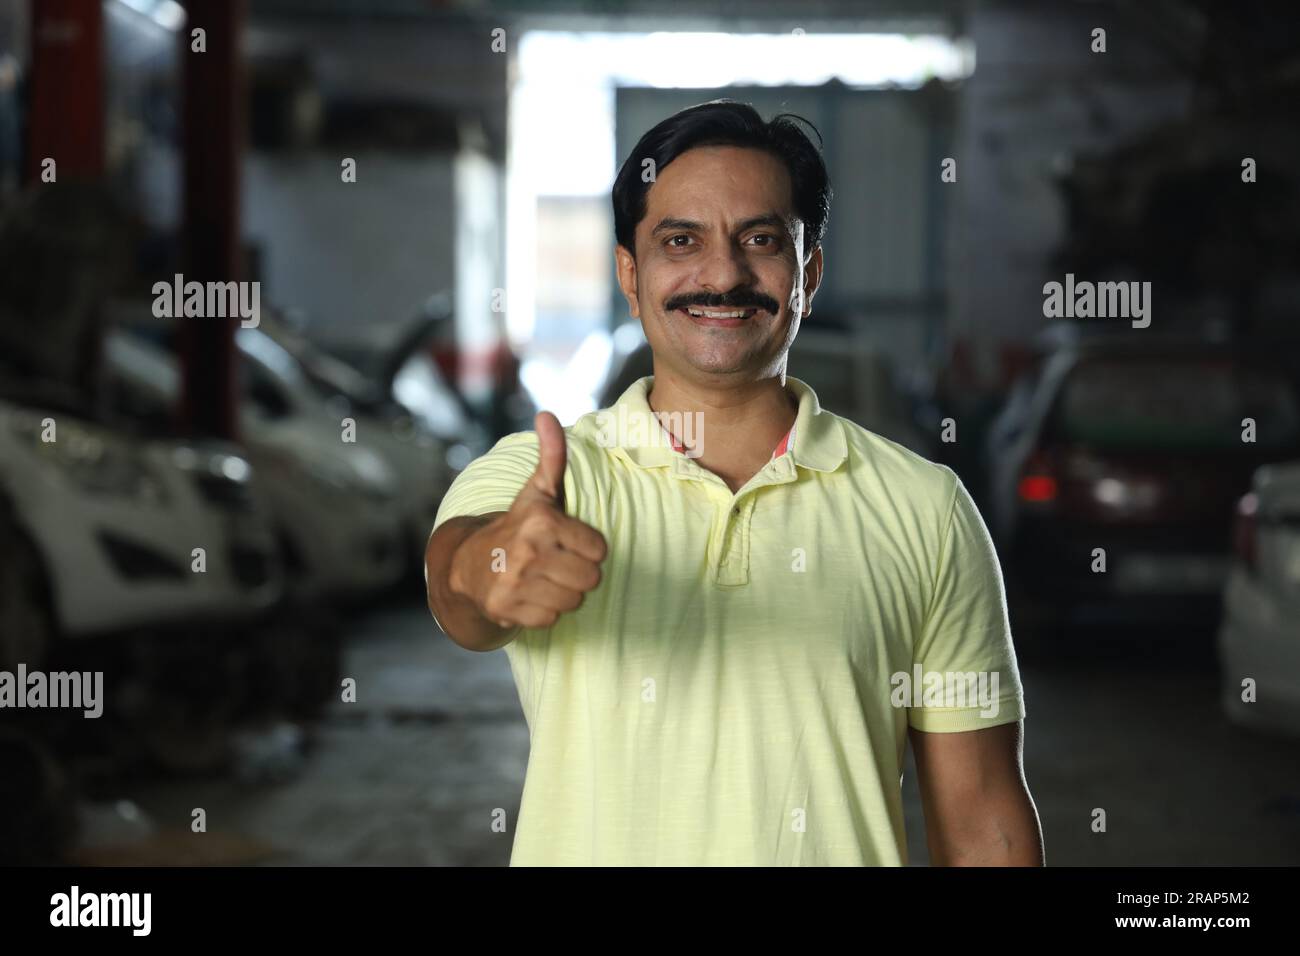 Indische glückliche Kundin, die Daumen hoch zeigt, weil sie das Auto repariert hat. Darstellung des Kundenvertrauens und der Kundenzufriedenheit gegenüber der Tankstelle Stockfoto